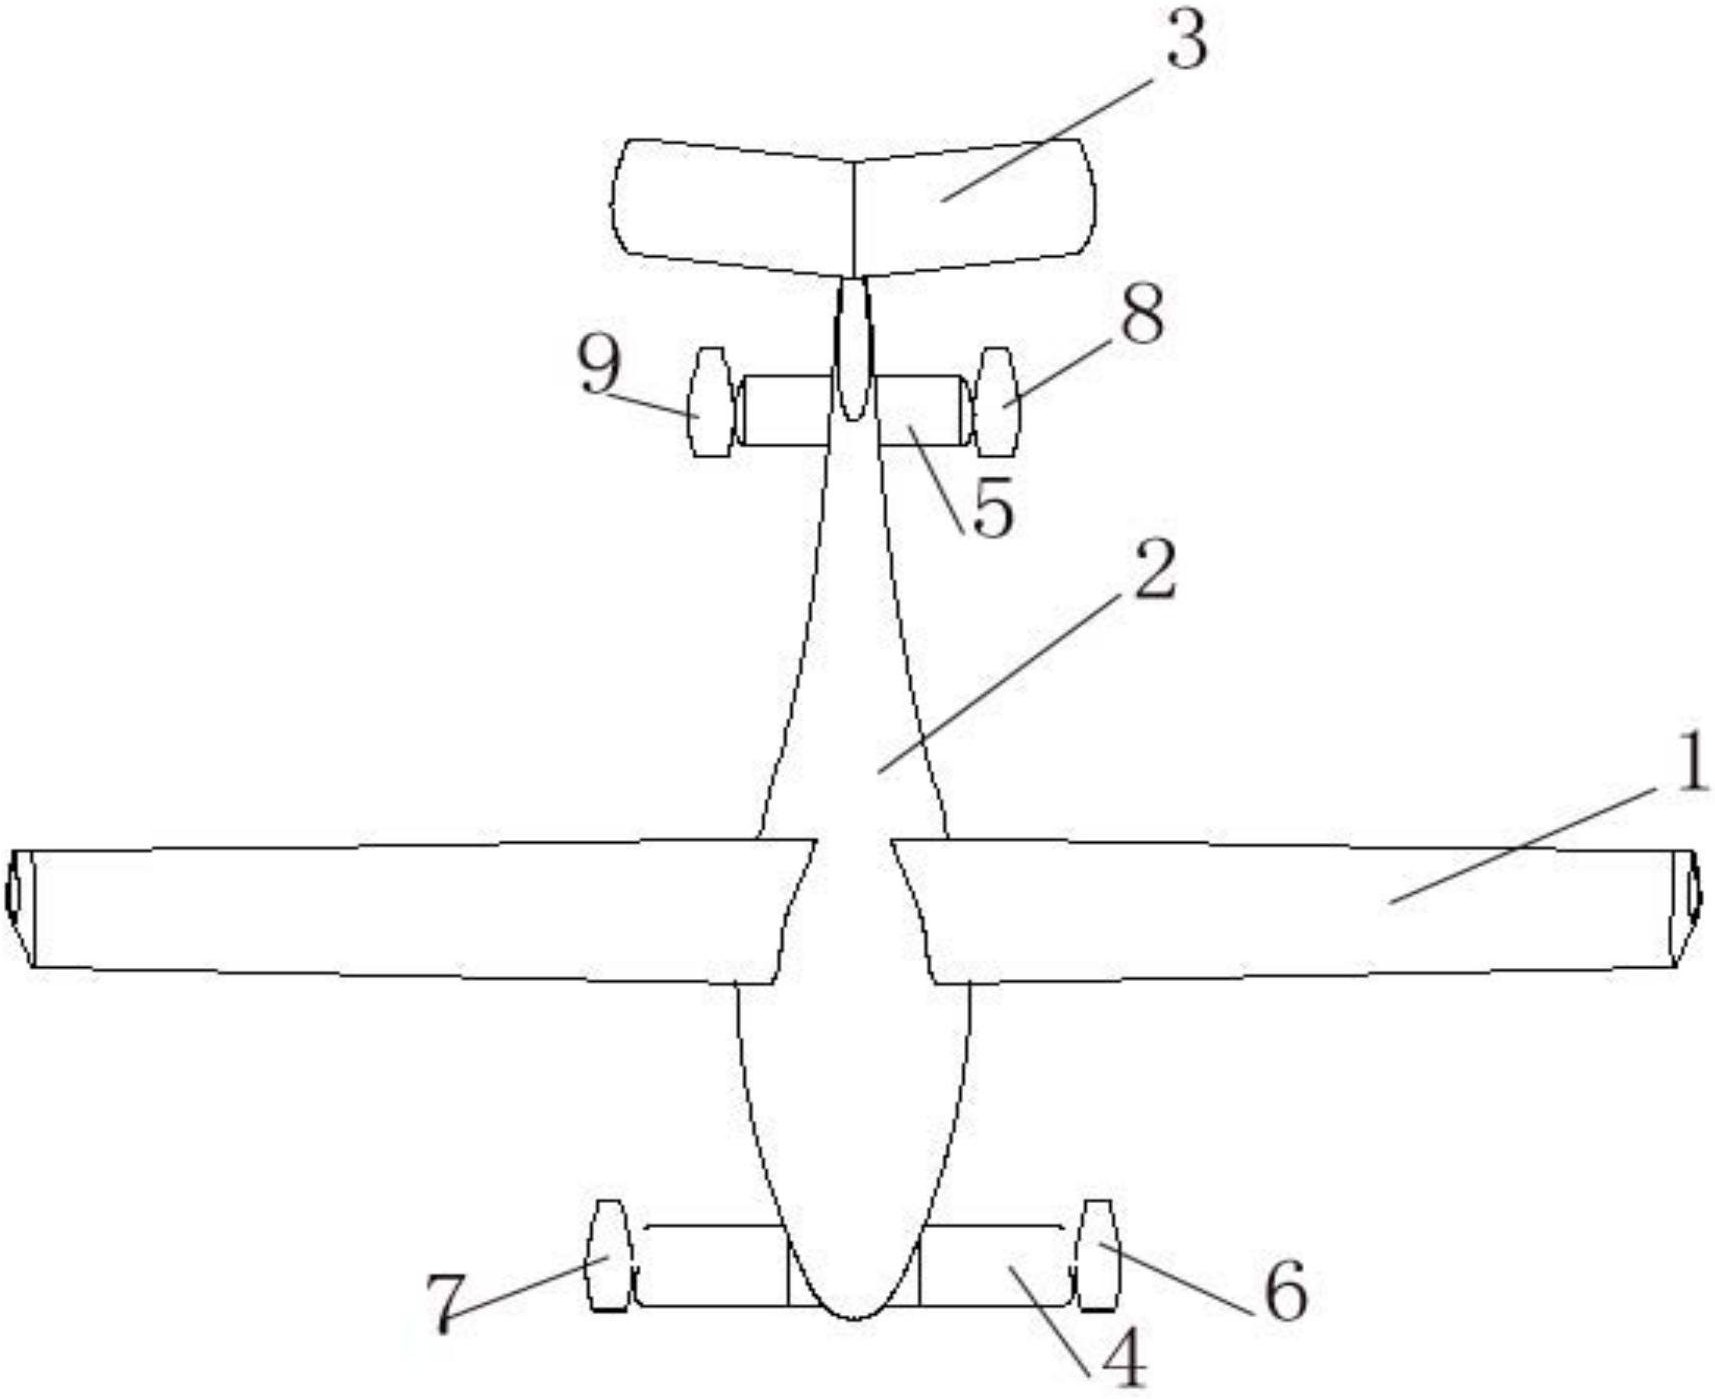 了三翼面布局垂直起降通用飞机,包括:机翼,机身,尾翼,鸭翼,动力装置